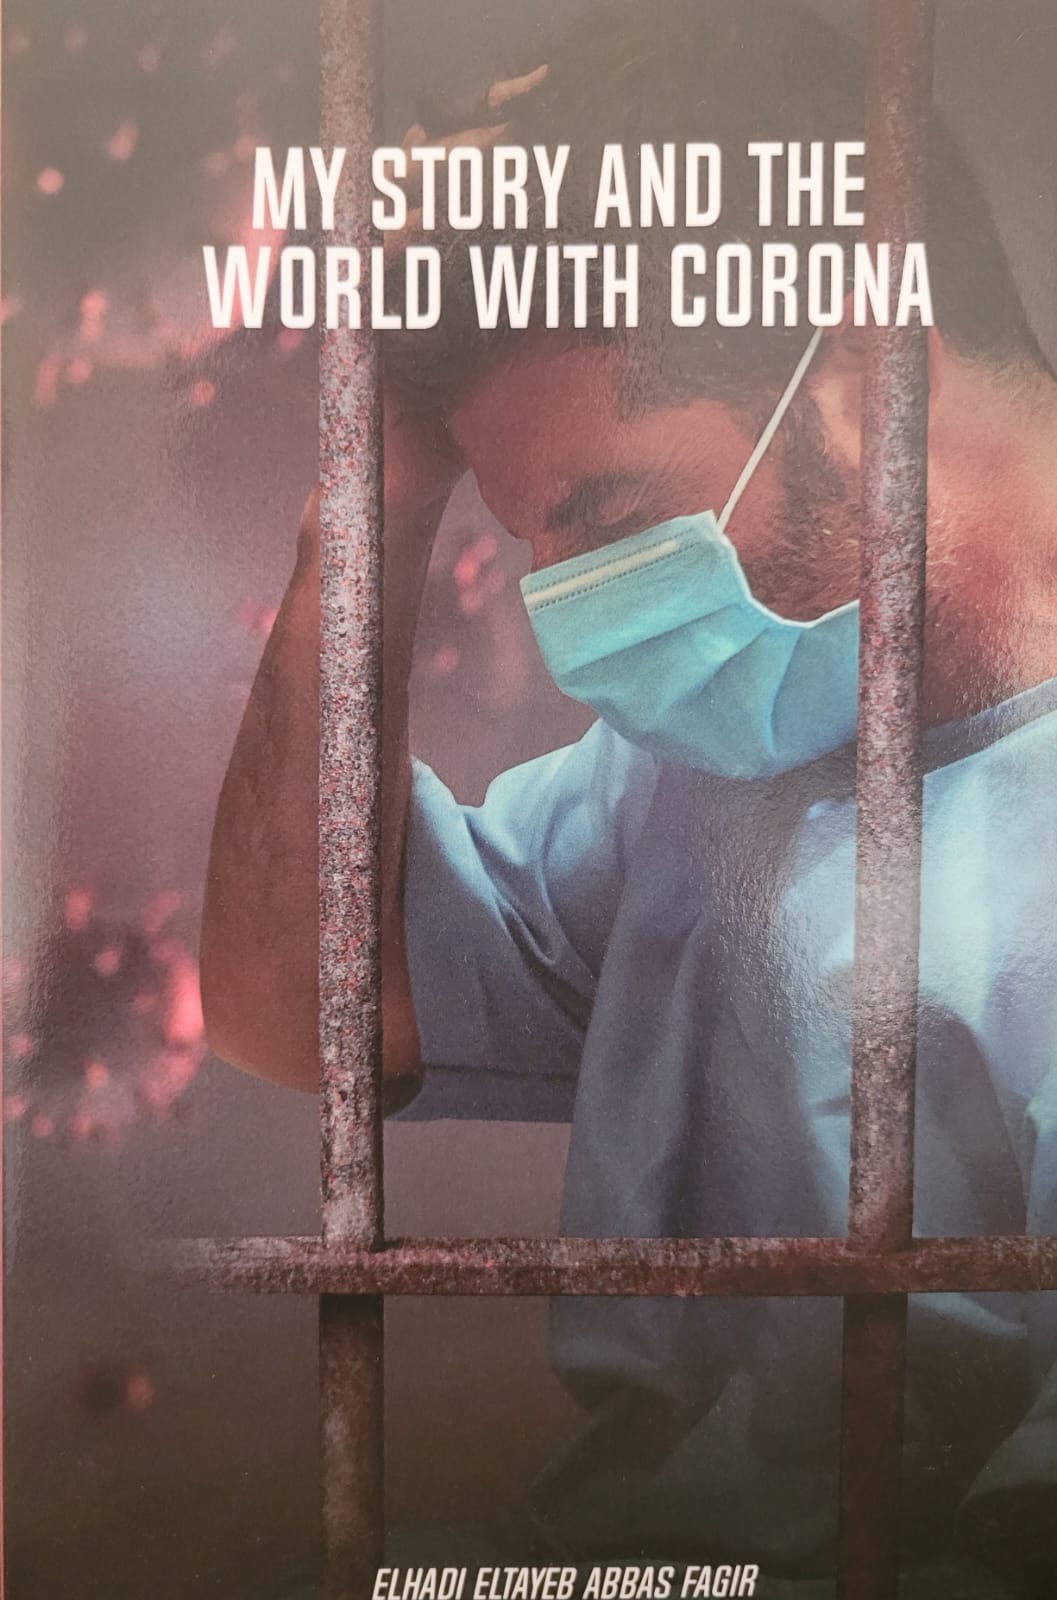 طبيب بمستشفى رأس الخيمة يشارك قصته حول فيروس كورونا من خلال كتابه الجديد “قصتي والعالم مع كورونا”